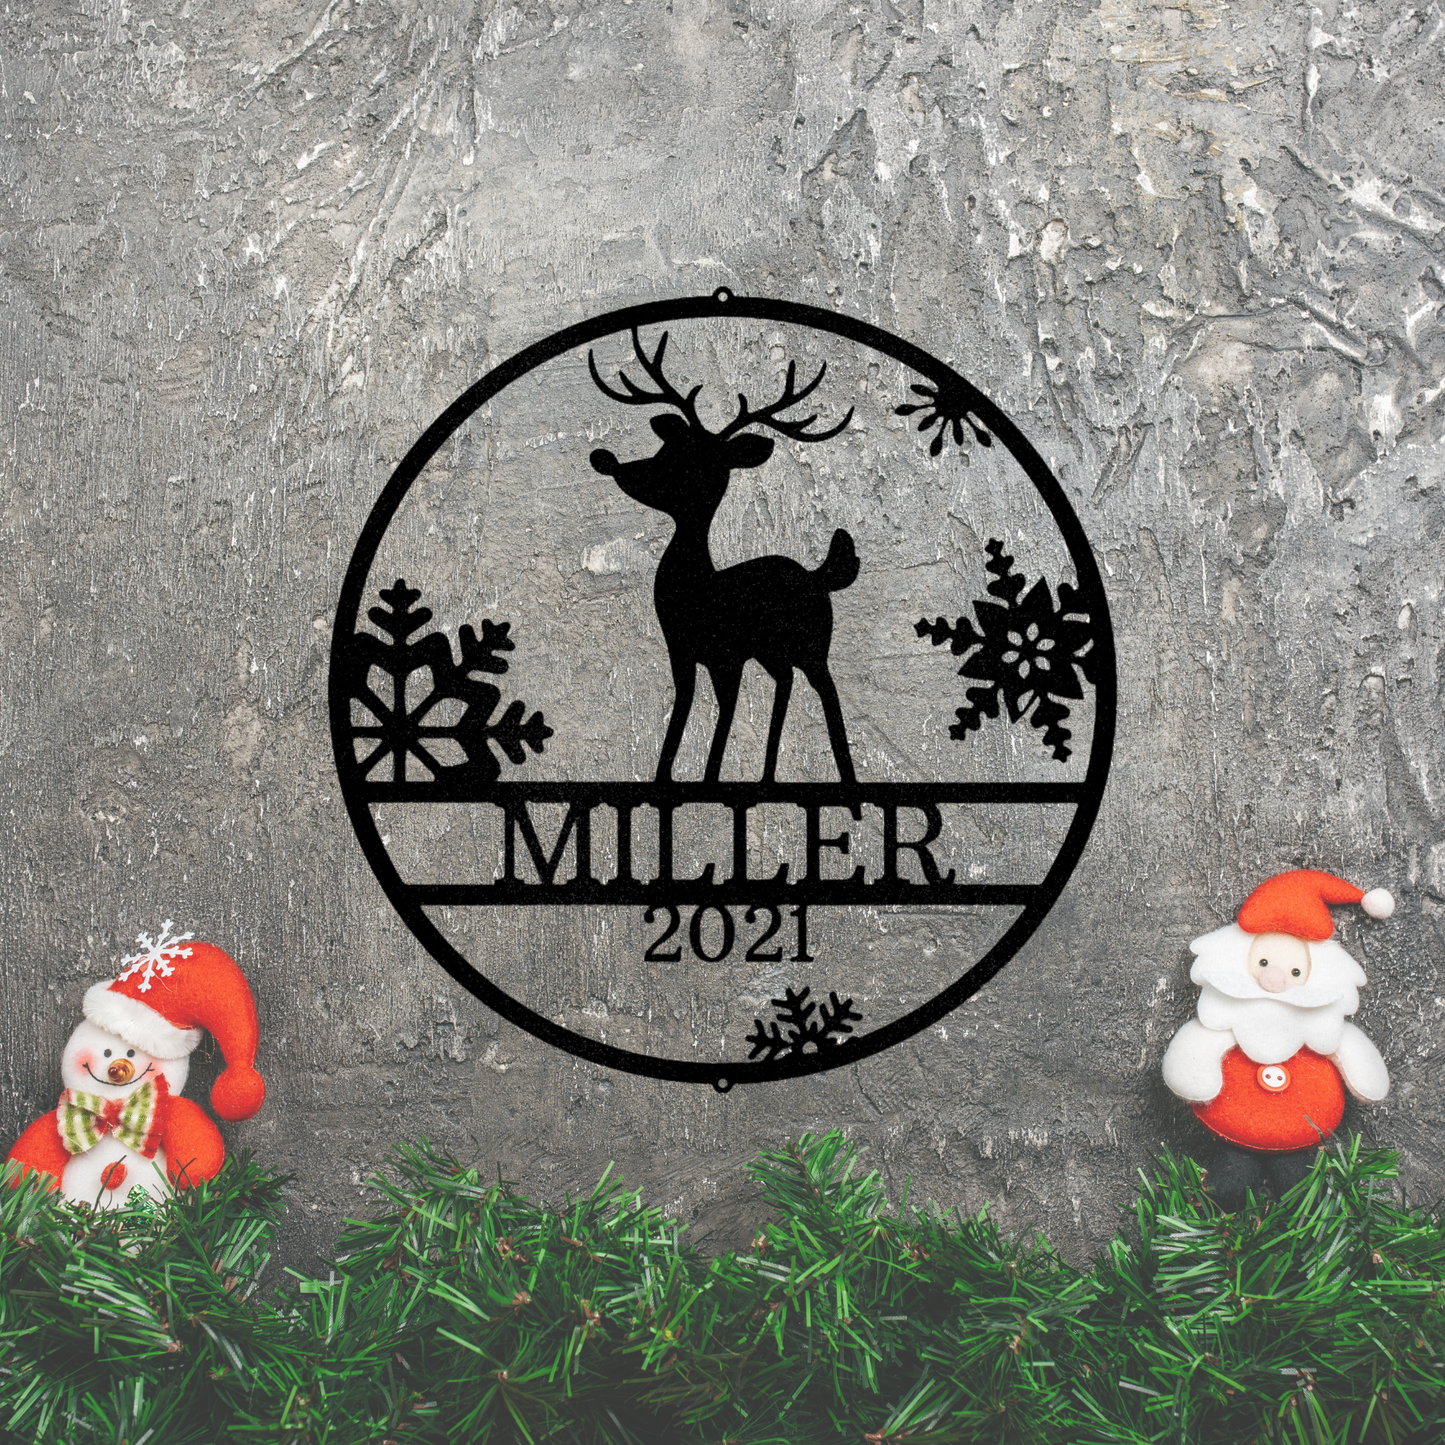 Rudolph's Monogram- Steel Sign, Merry Christmas, Metal Decorative Sign, Door Hanger, Outdoor Metal Sign, Dining Room Wall Decor